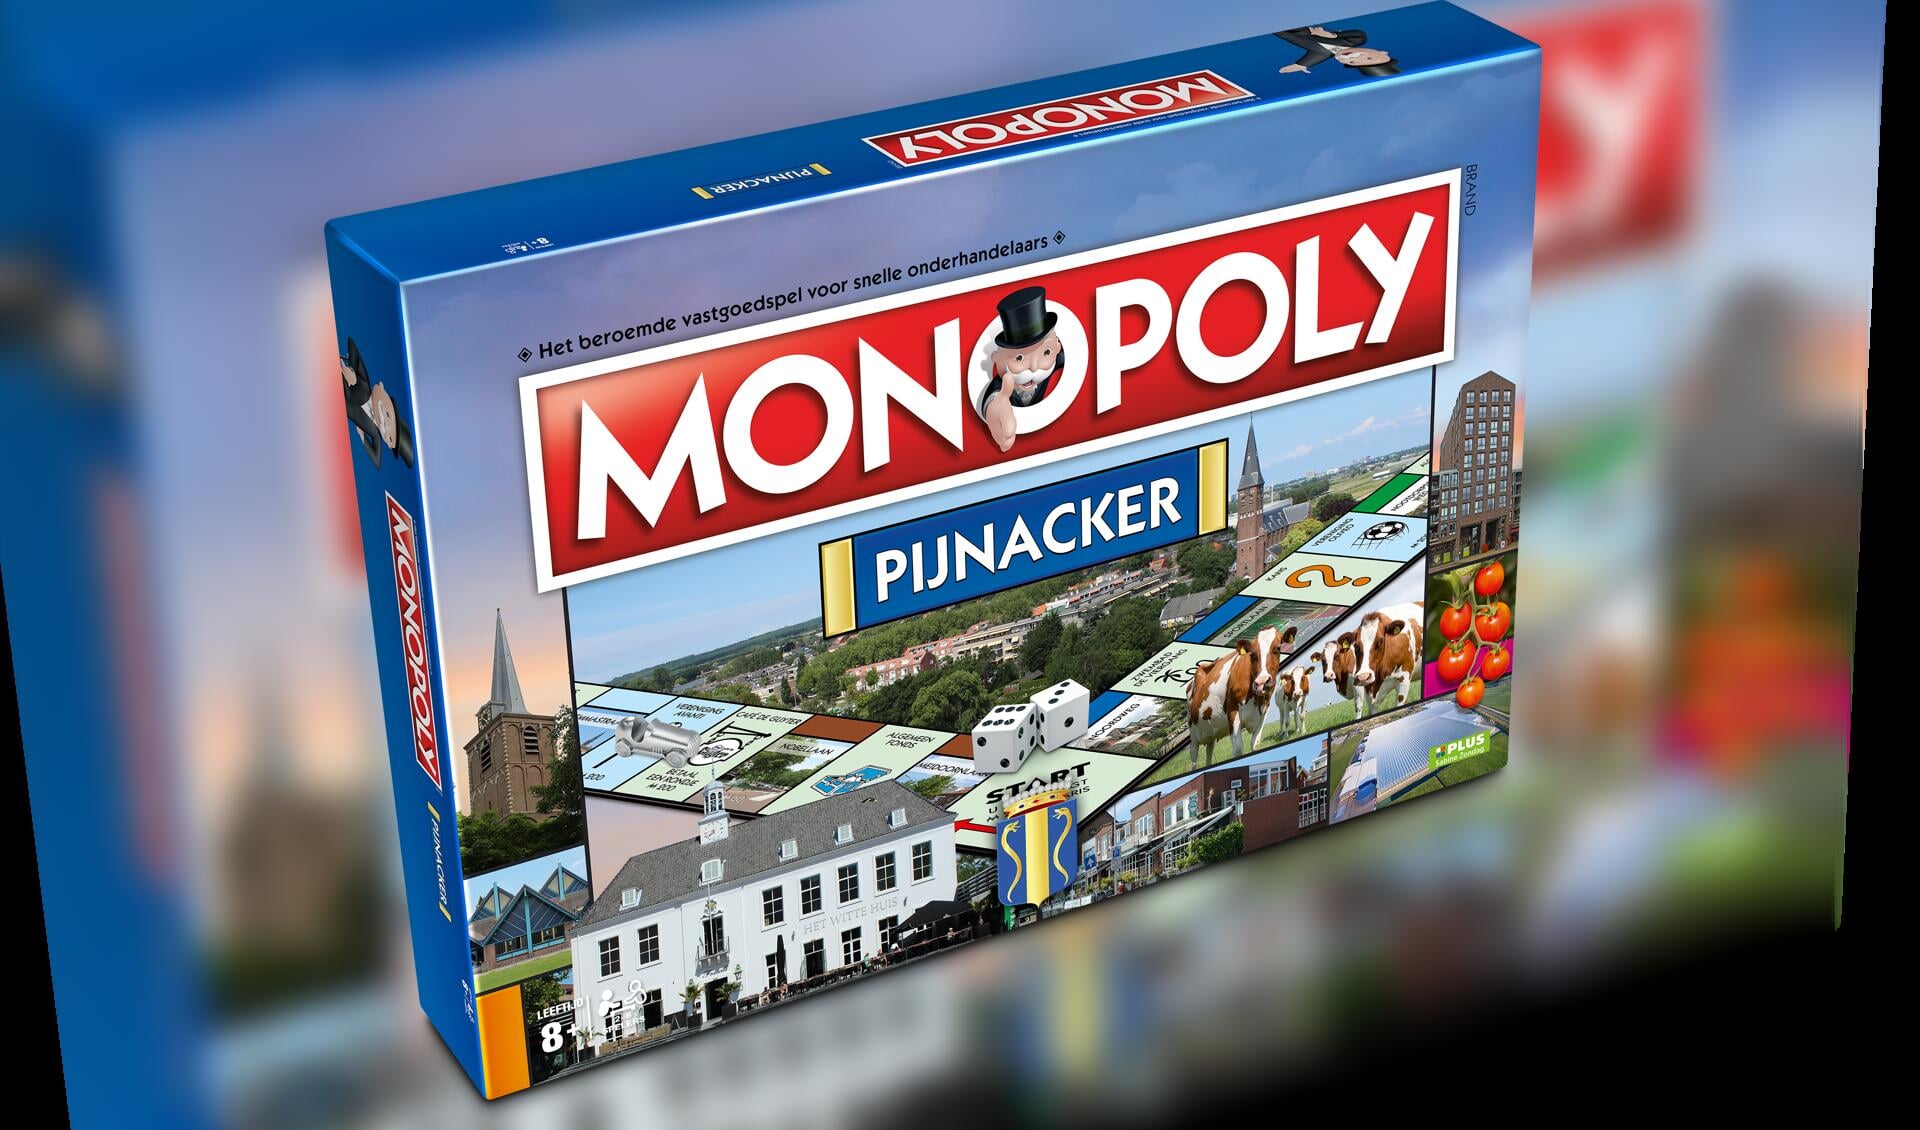 Onder Pijnackernaren wordt deze week een Monopoly kanskaart verspreid, waarmee ze kans maken op prijzen.